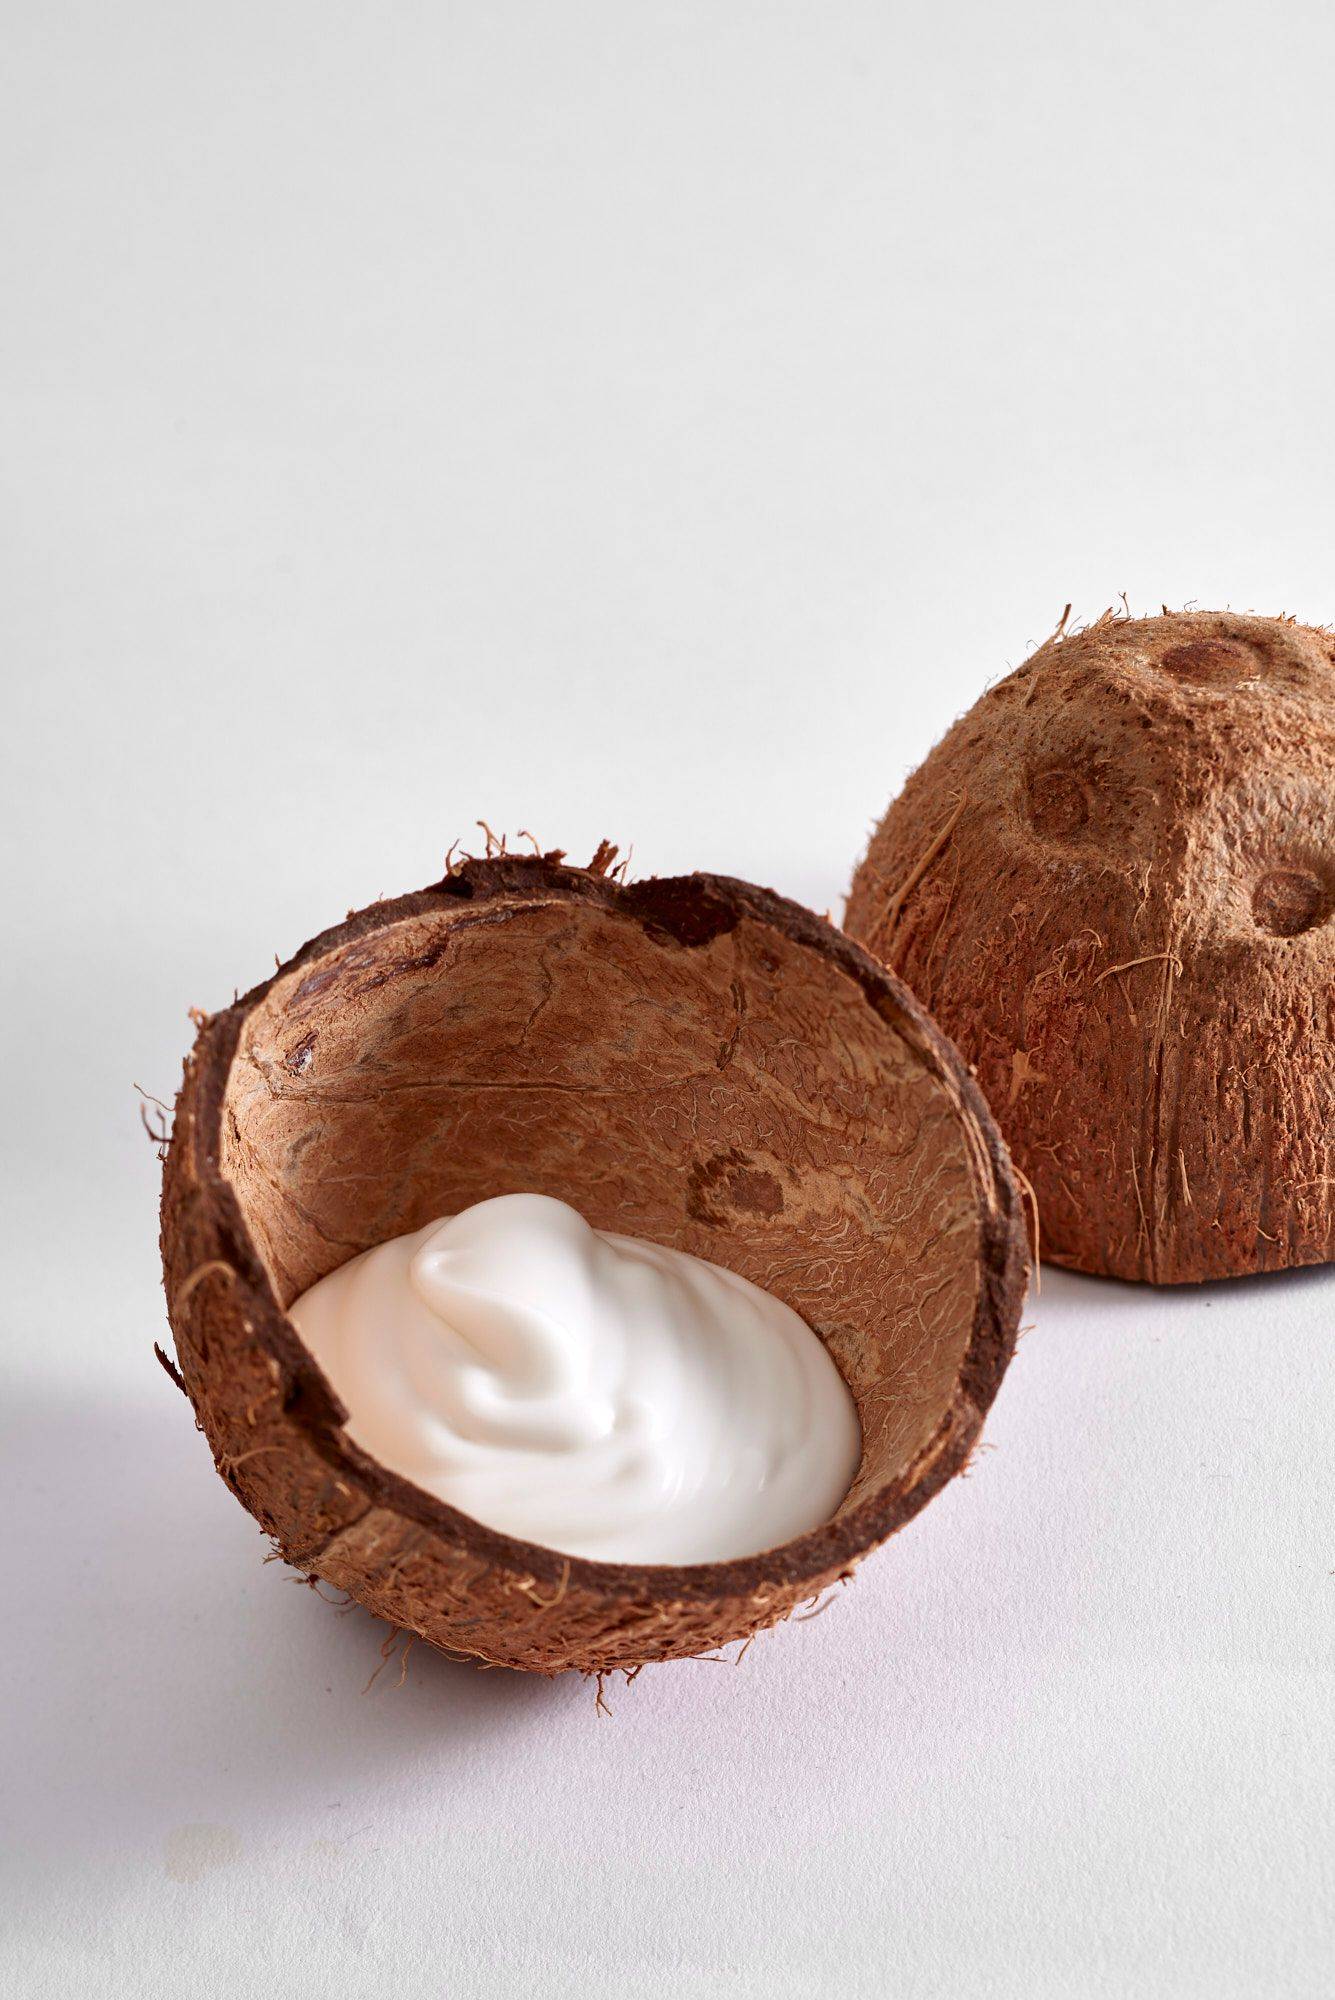 kokos creme in kokosnussschalen auf weißem hintergrund